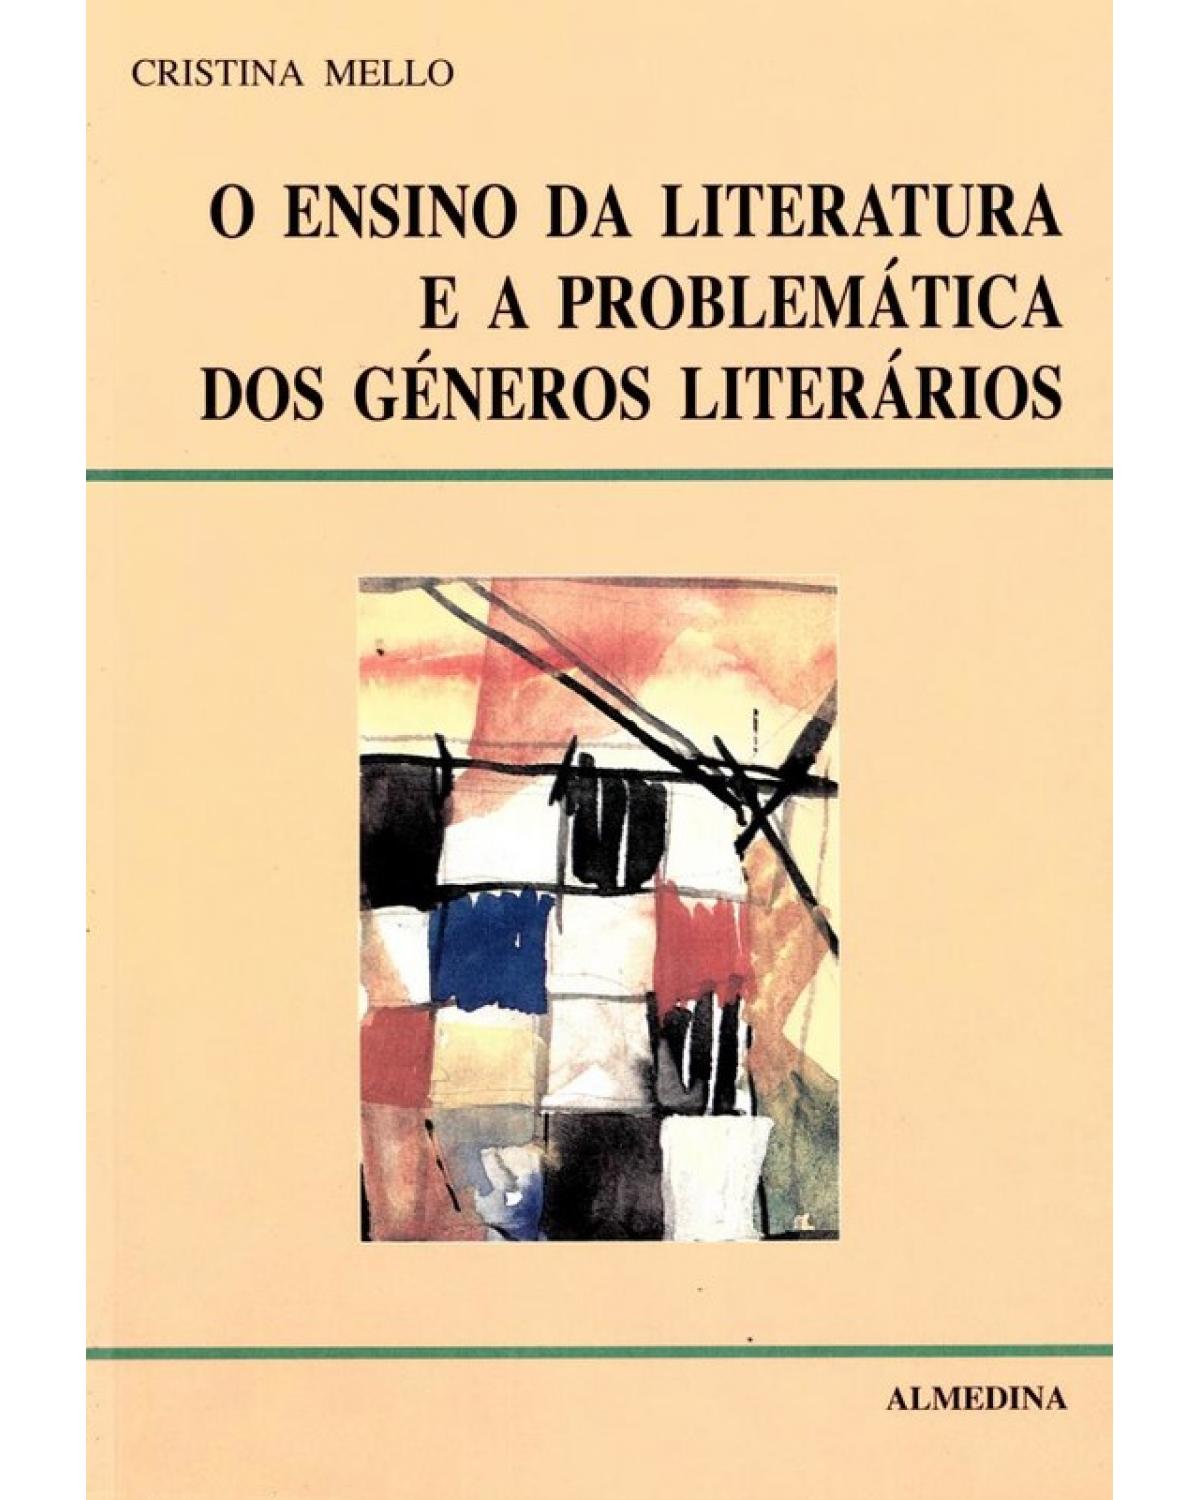 O ensino da literatura e a problemática dos géneros literários - 1ª Edição | 1998